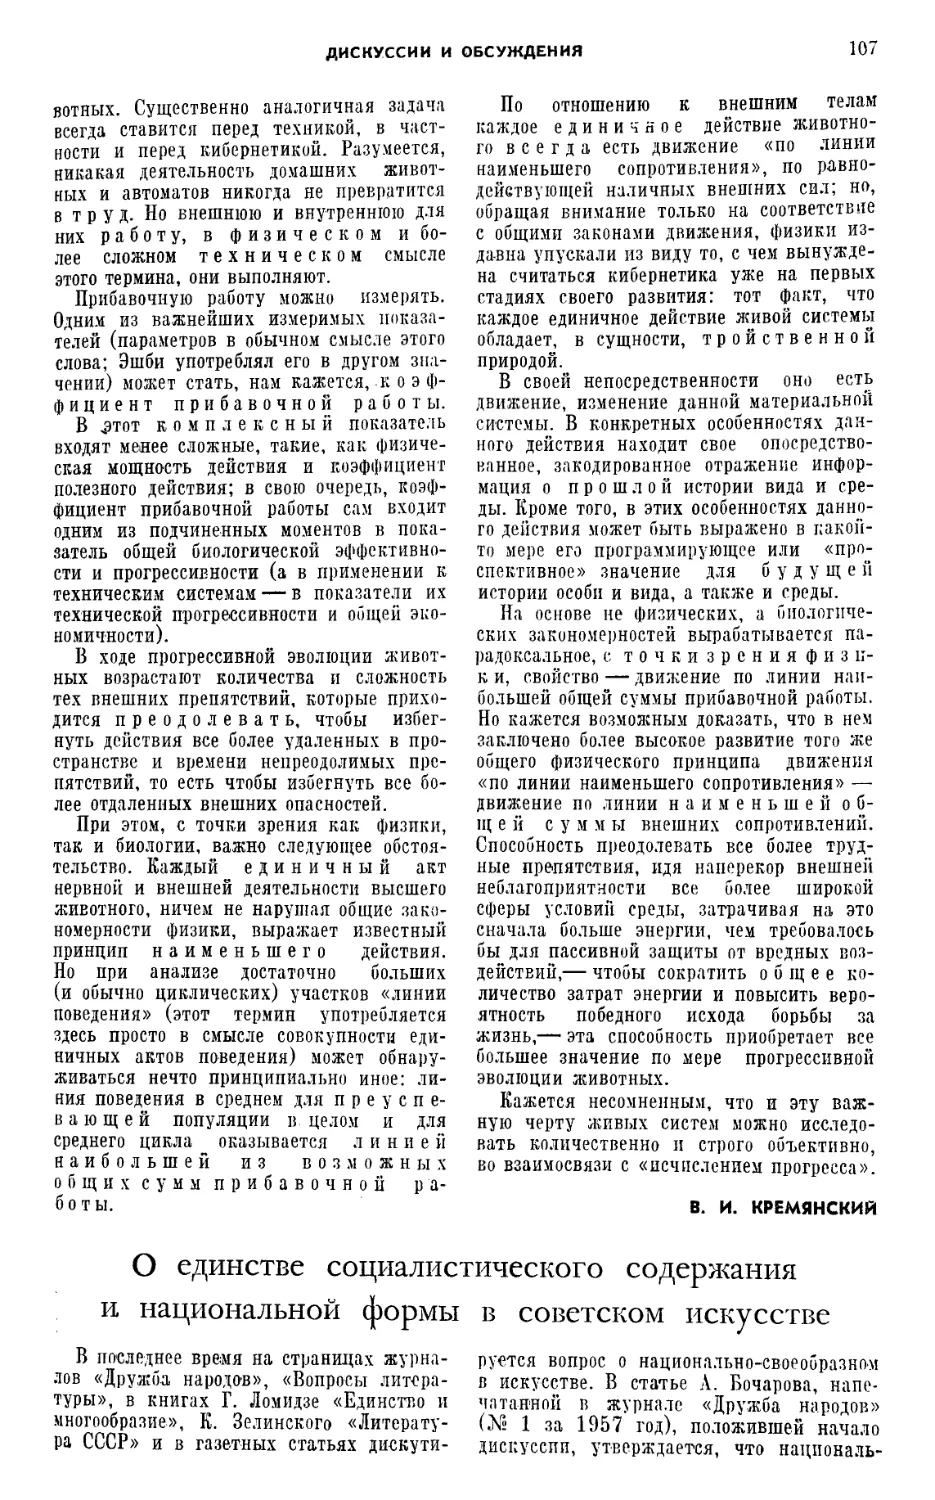 Г. 3. Апресян — О единстве социалистического содержания и национальной формы в советском искусстве